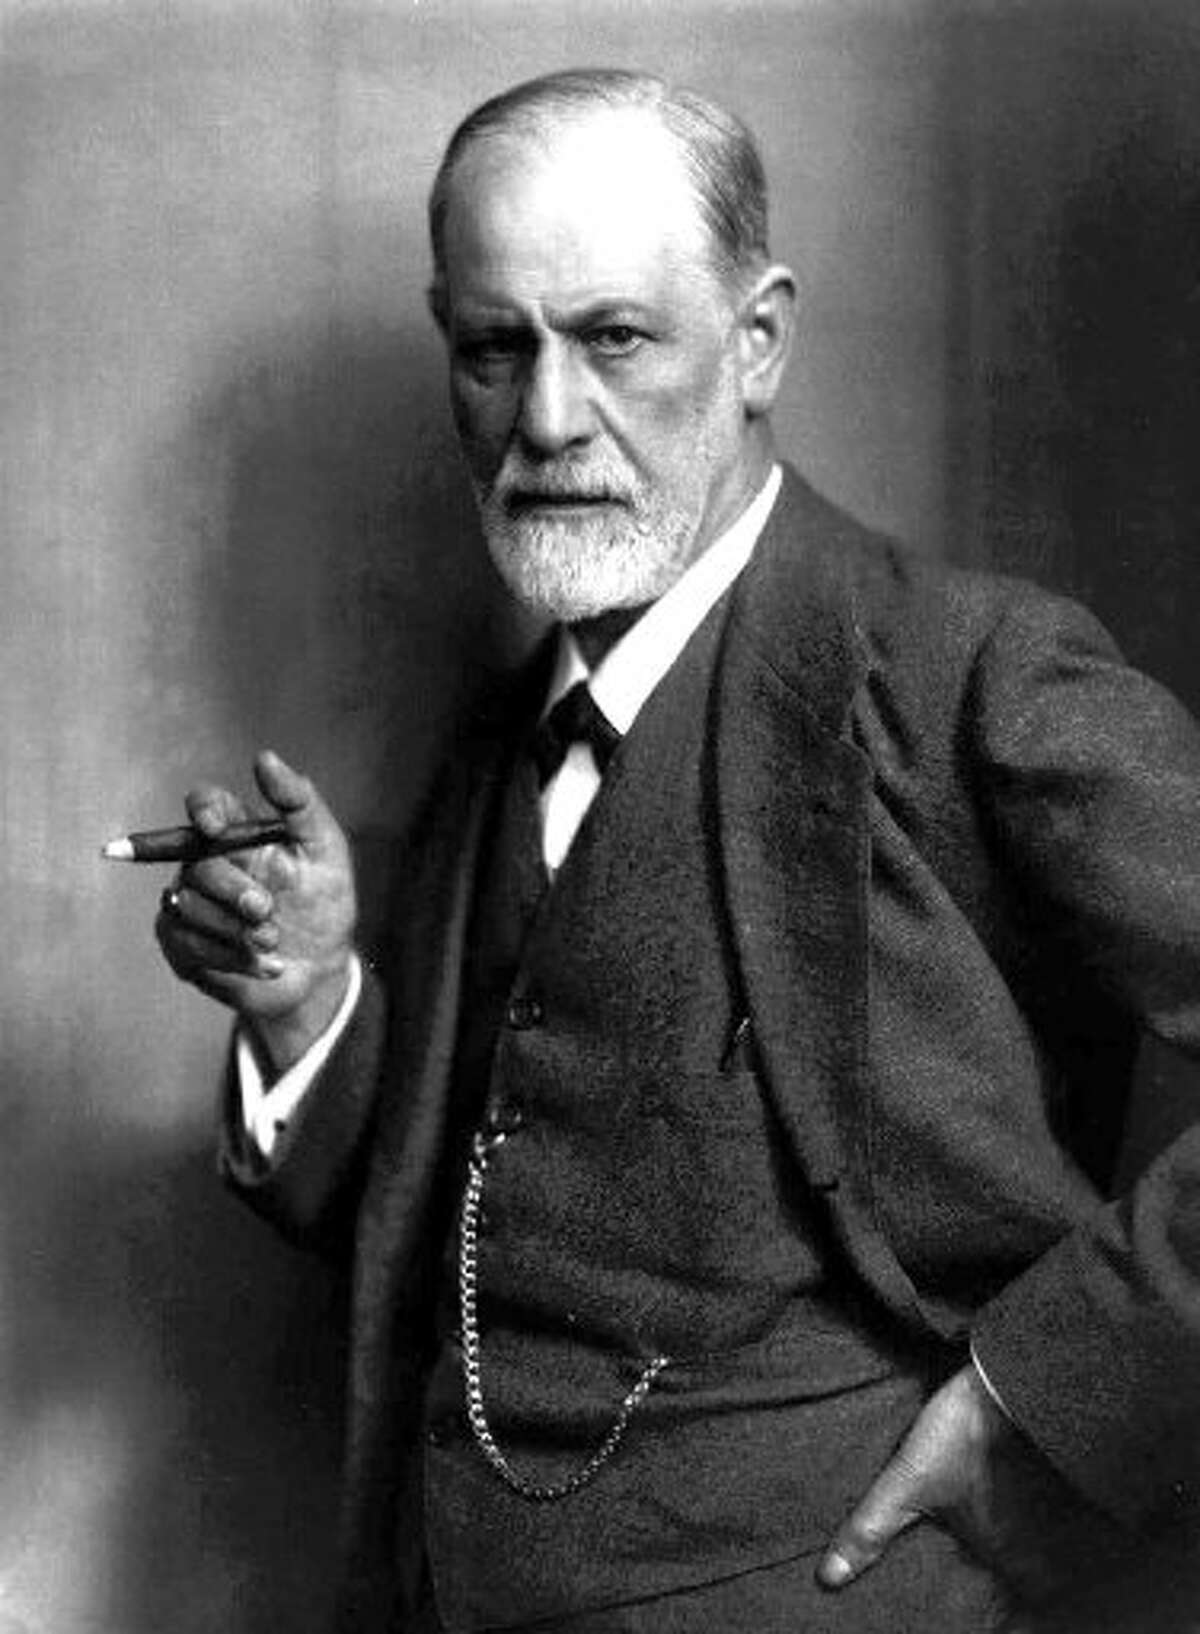 Sigmund Freud with cigar, which was just a cigar.